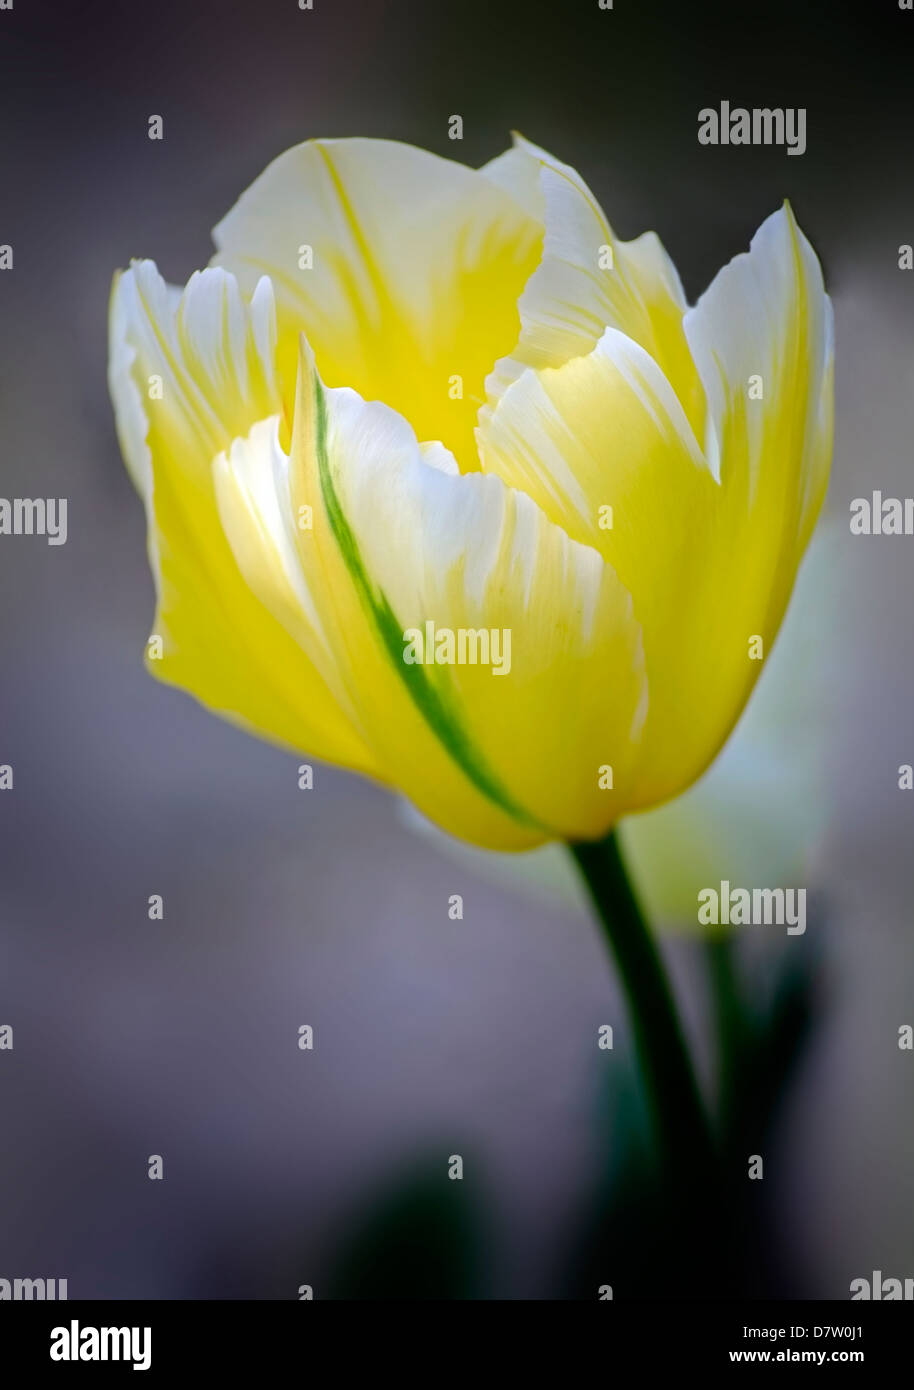 Tulipán amarillo con acentos en color crema y blanco, Irlanda Foto de stock